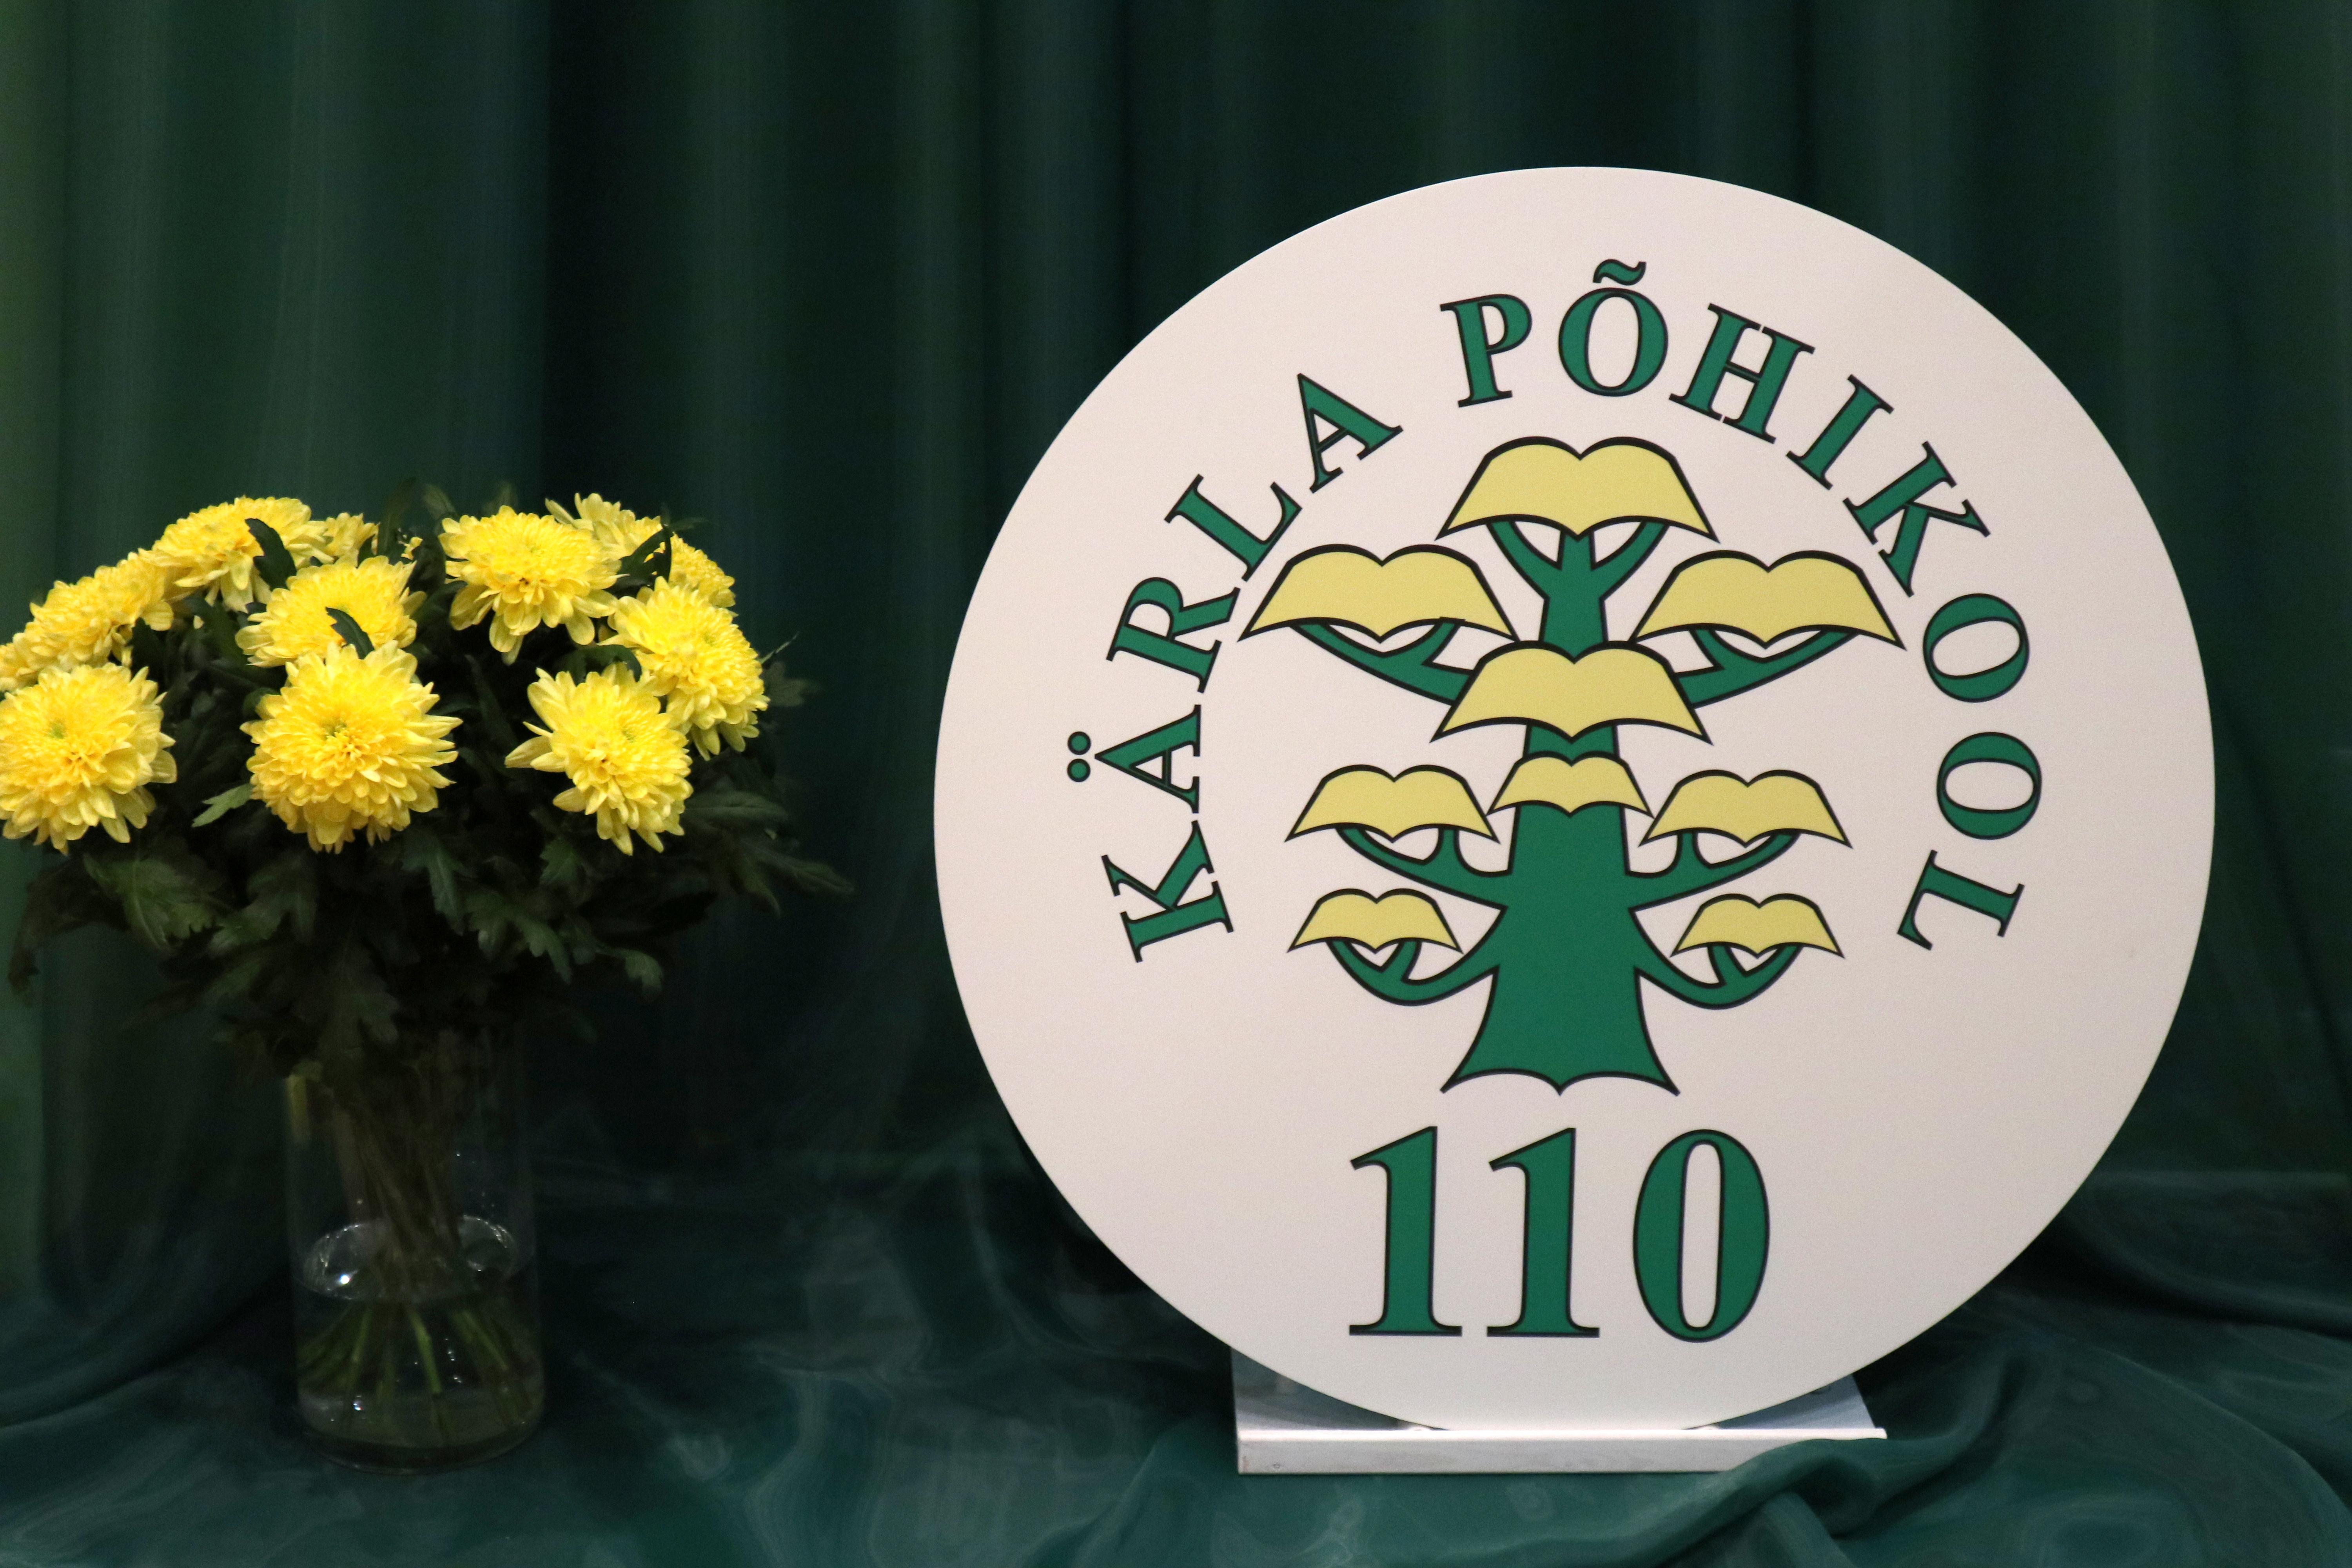 Kärla Põhikool 110 logo